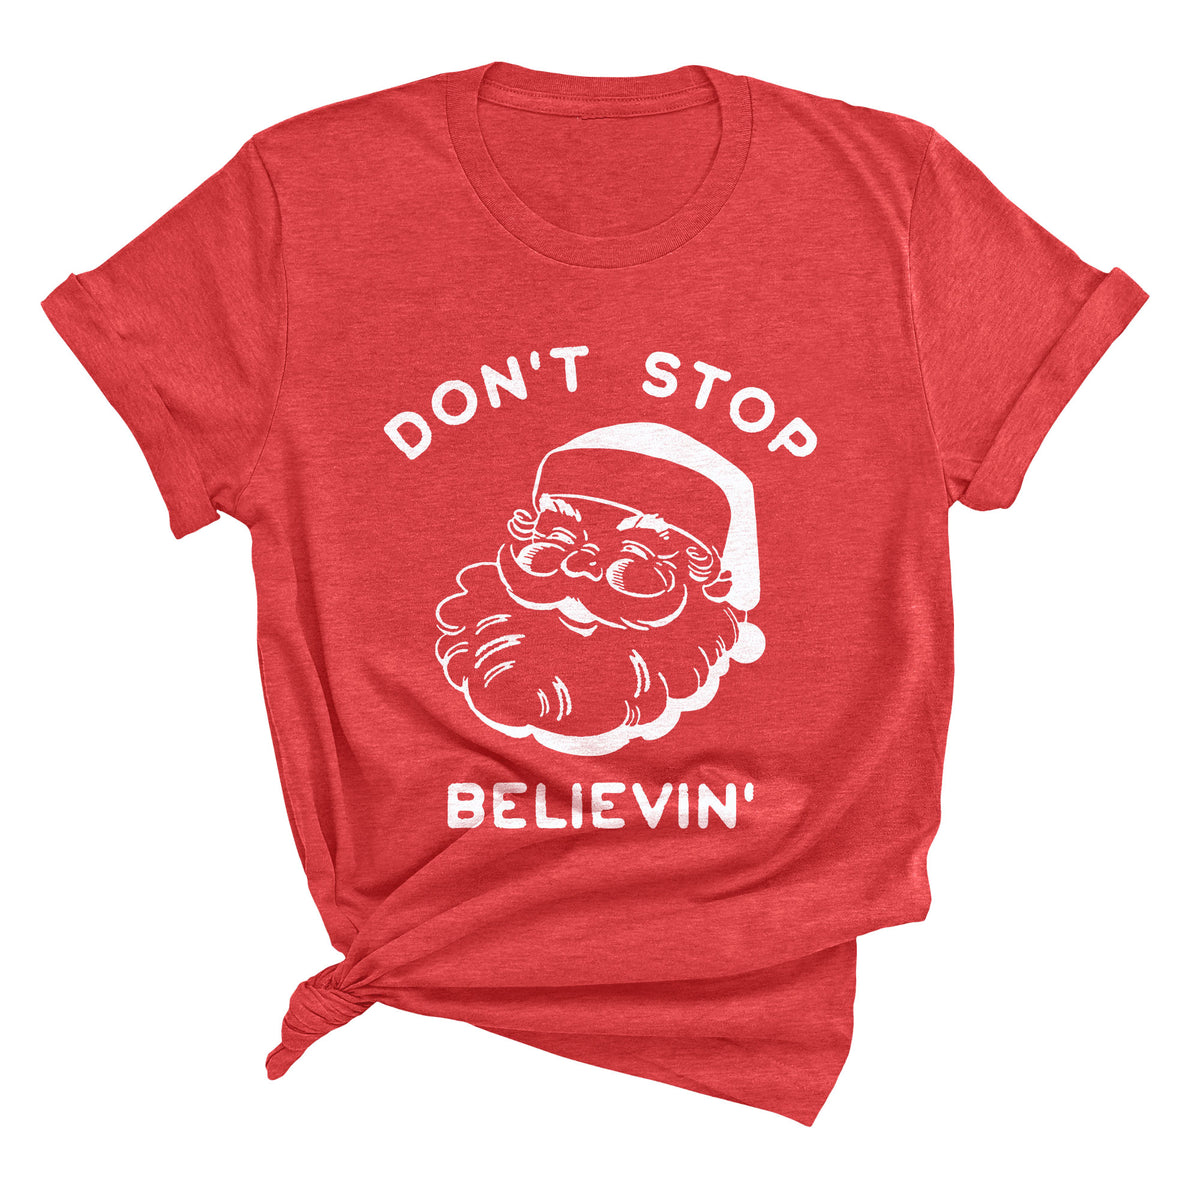 Don't Stop Believin' Unisex T-Shirt